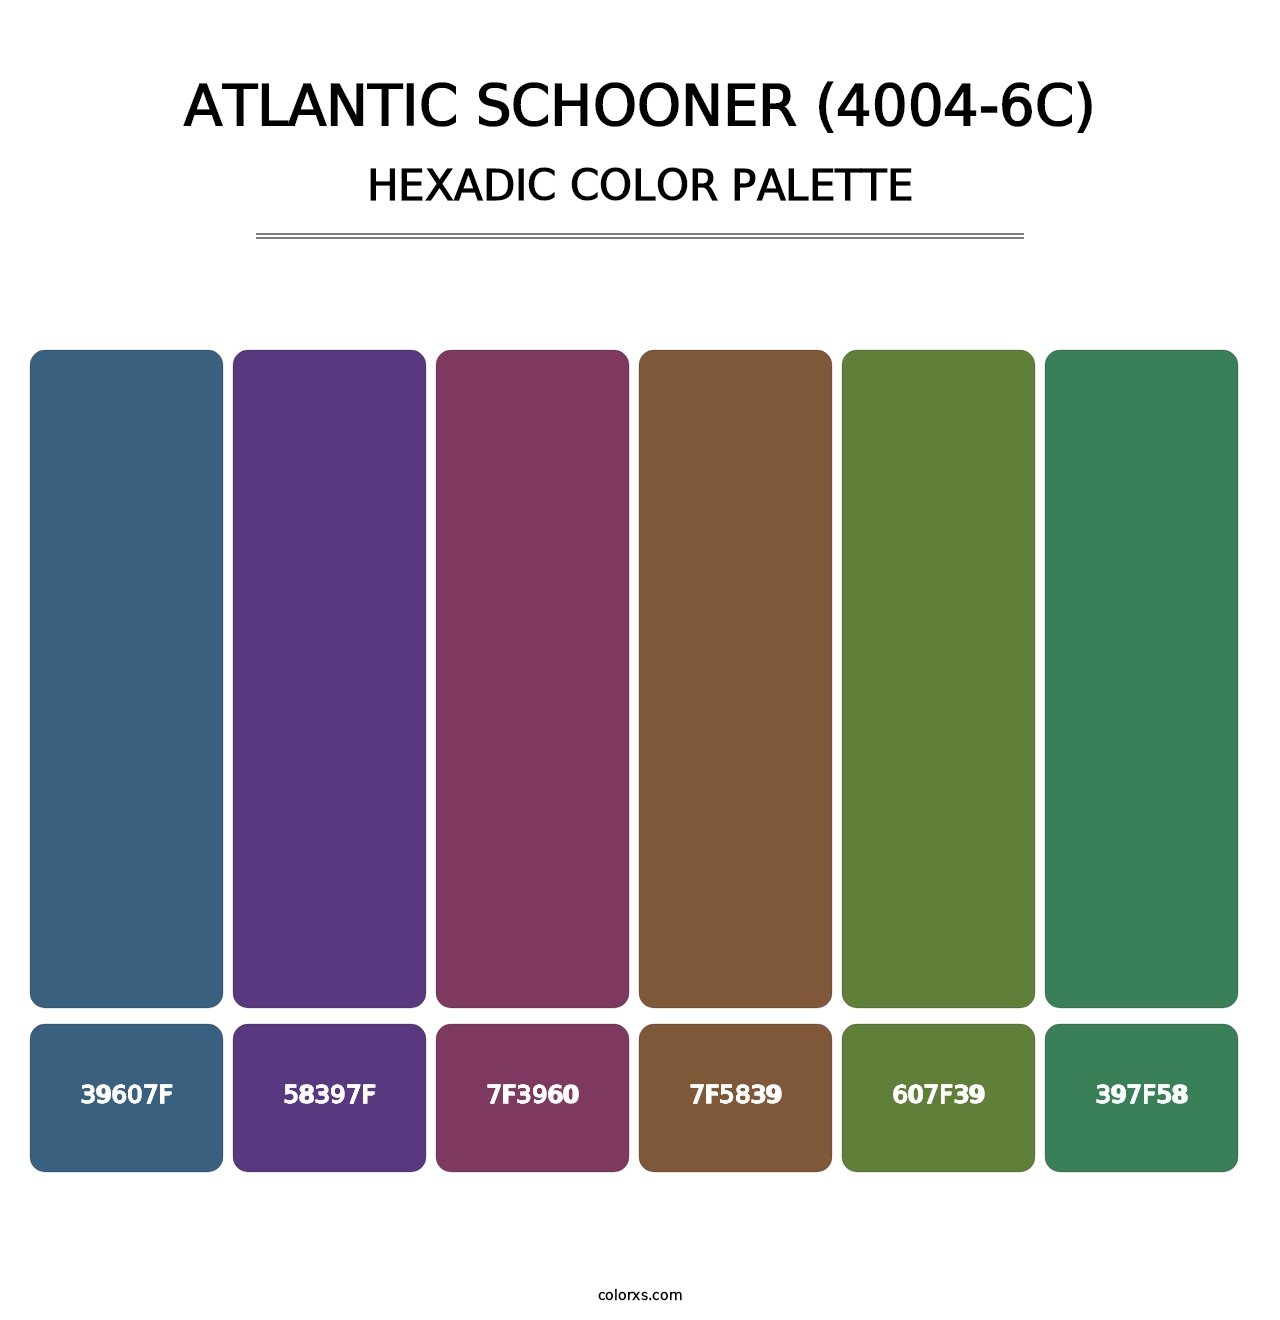 Atlantic Schooner (4004-6C) - Hexadic Color Palette